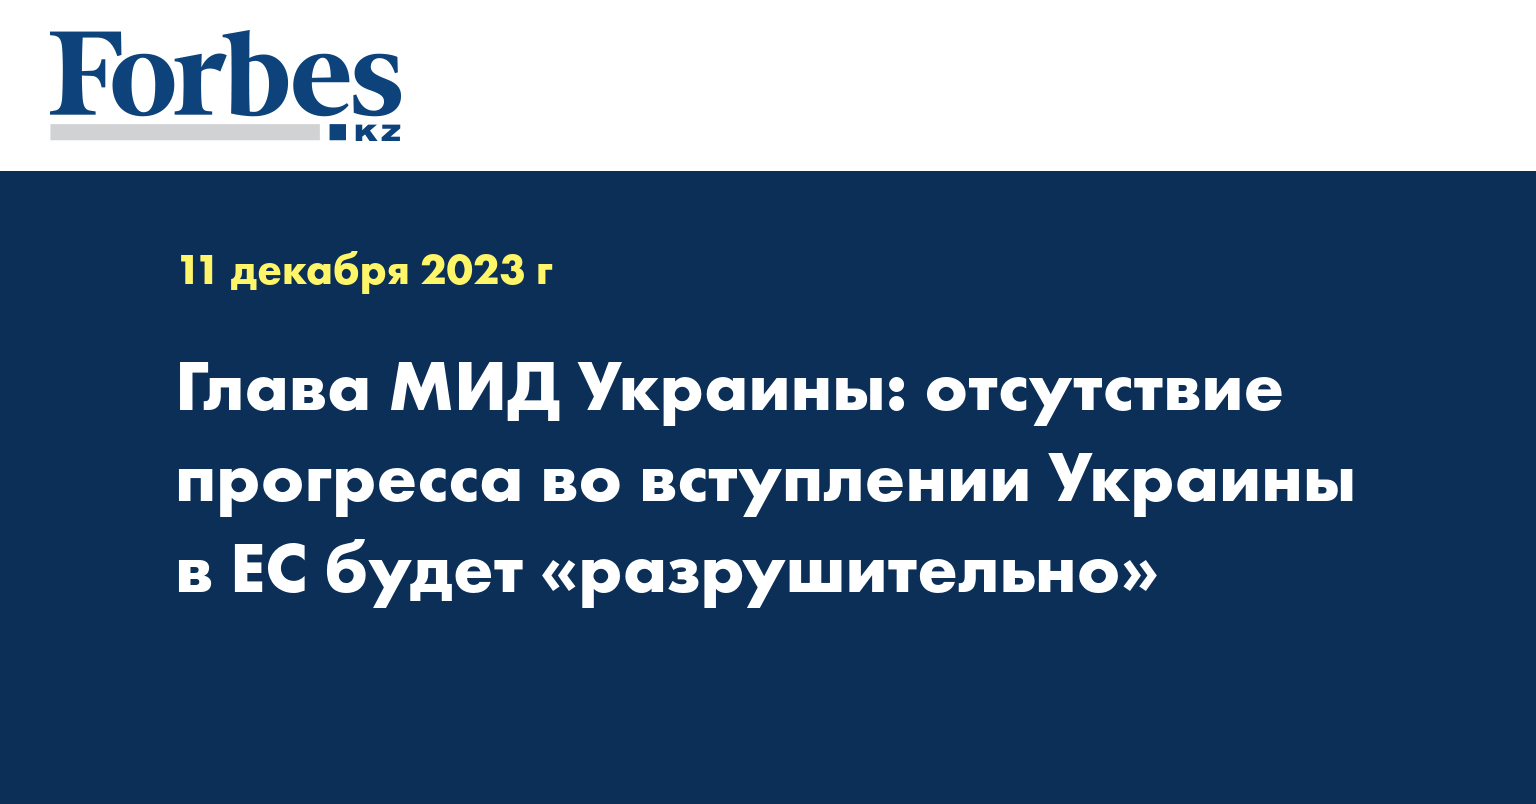 Глава МИД Украины: отсутствие прогресса во вступлении Украины в ЕС будет «разрушительно»